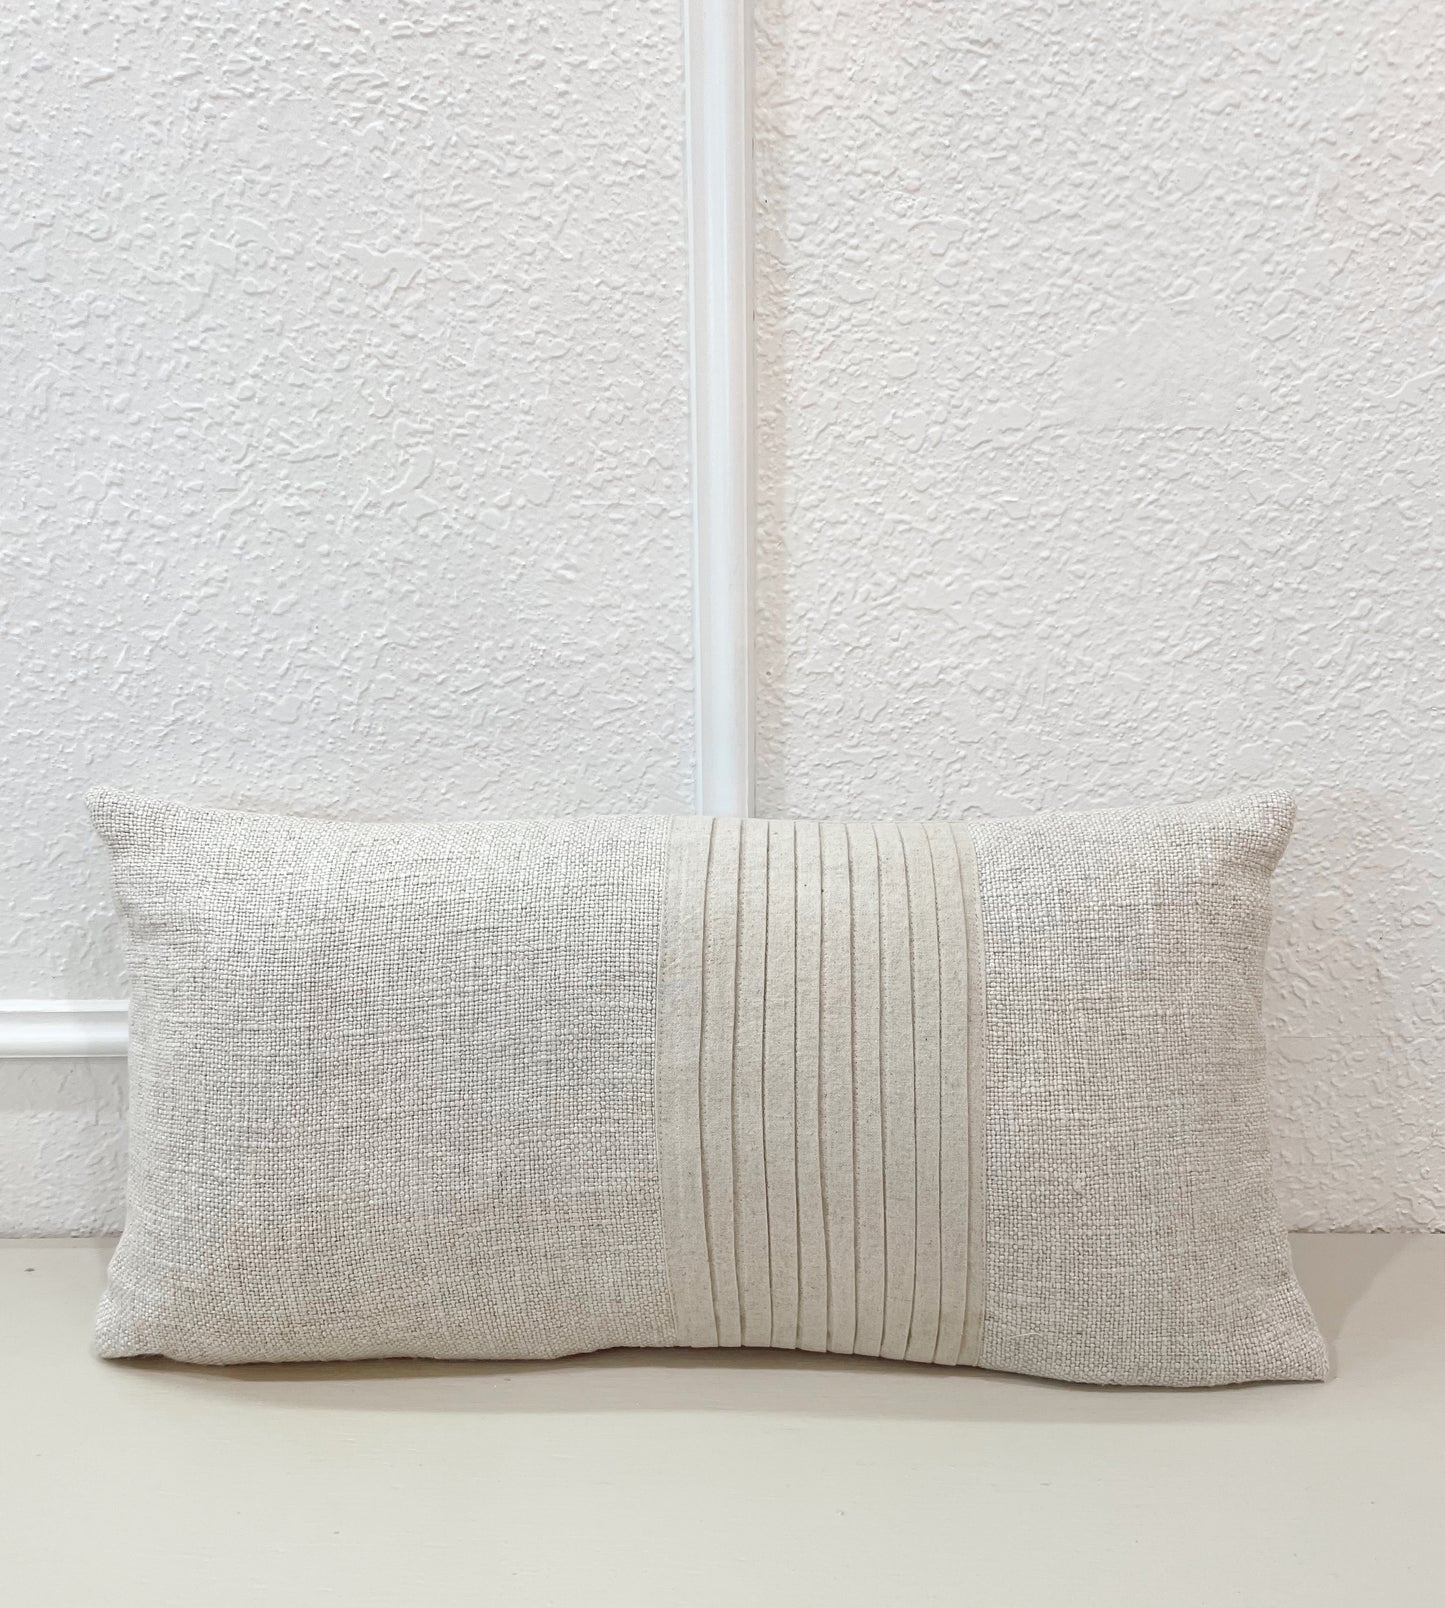 24" x 12" Linen Blend Pleated Lumbar Pillow